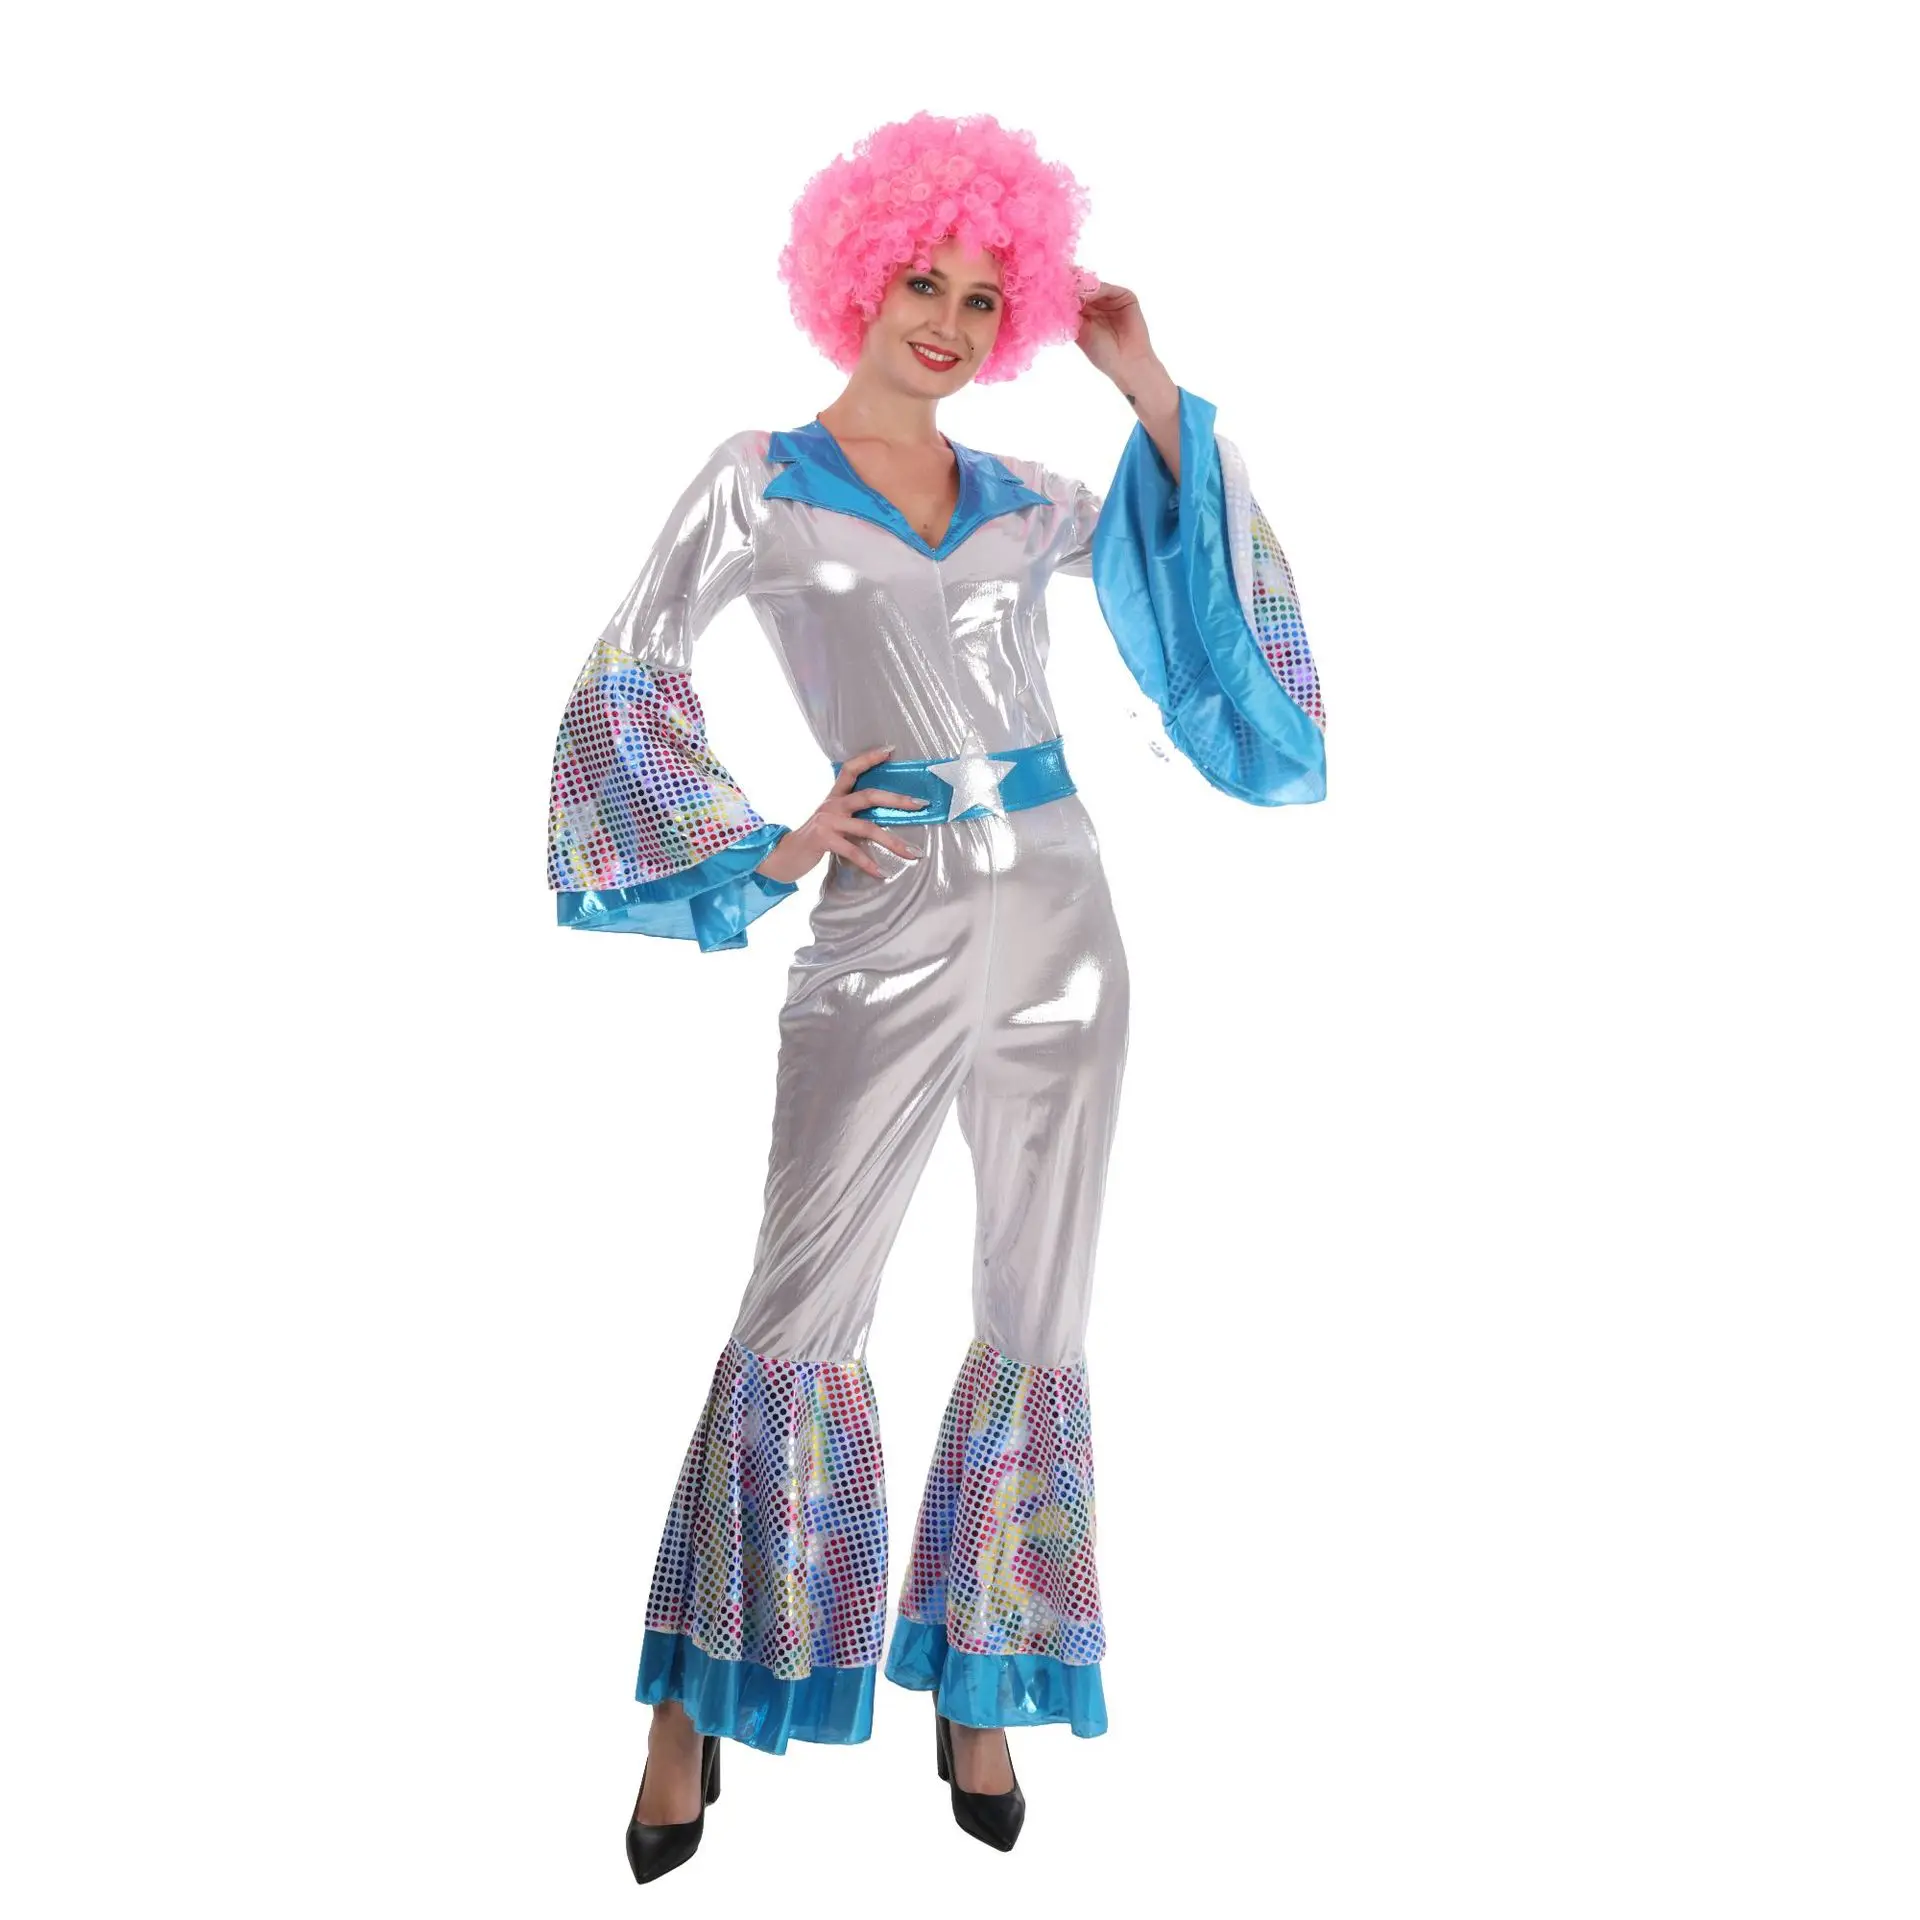 

Оптовая продажа, хип-хоп танцевальный костюм в стиле ретро для косплея, костюм для дискотеки в стиле 1920-х годов, карнавальный костюм вечерние для Хэллоуина в стиле хиппи